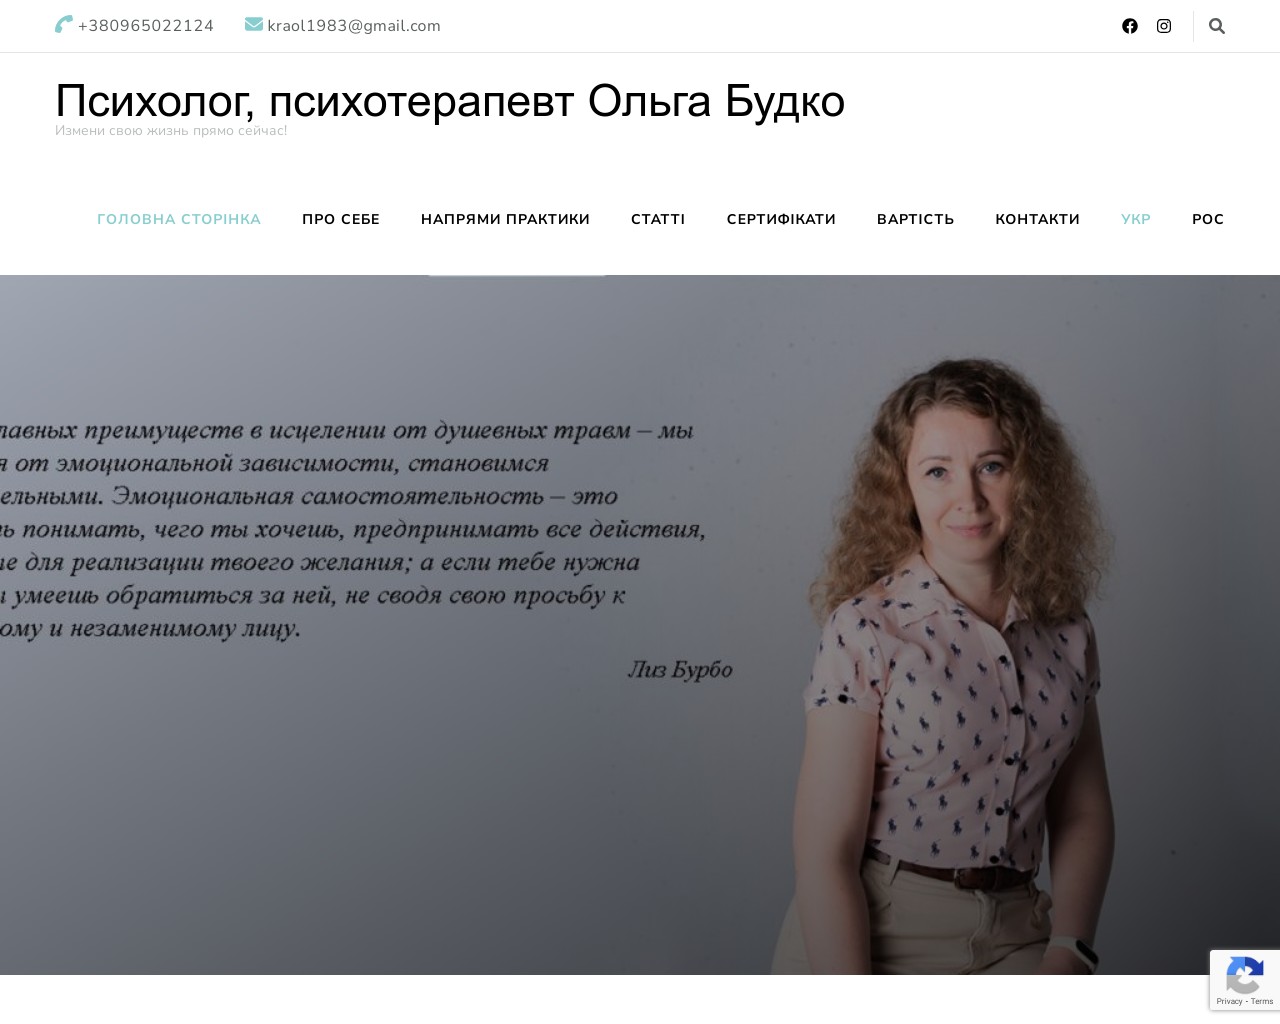 Изображение скриншота сайта - Психолог, психотерапевт Ольга Будко. Консультации он-лайн и очно.